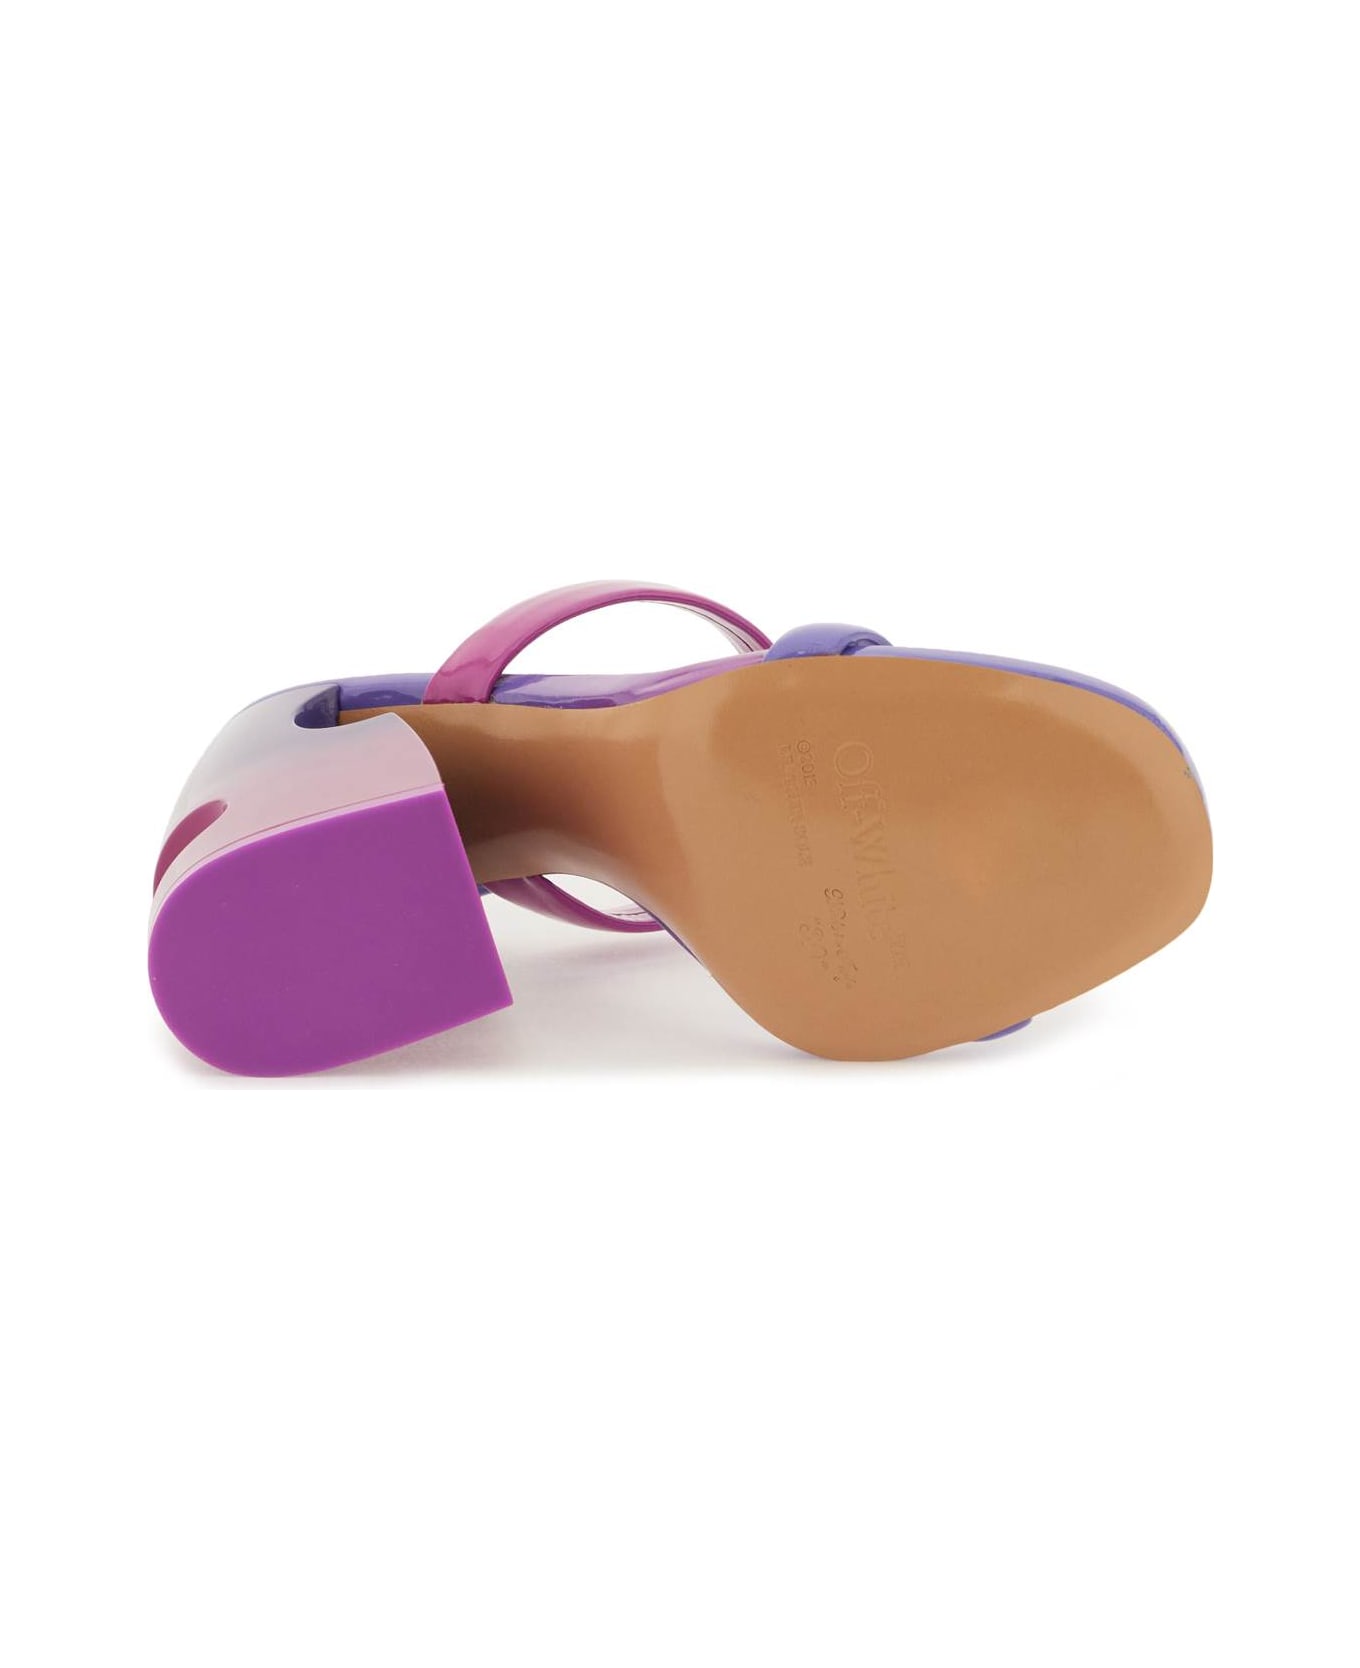 Off-White Lea Mule Sandal - FUCHSIA VIOL (Purple) サンダル